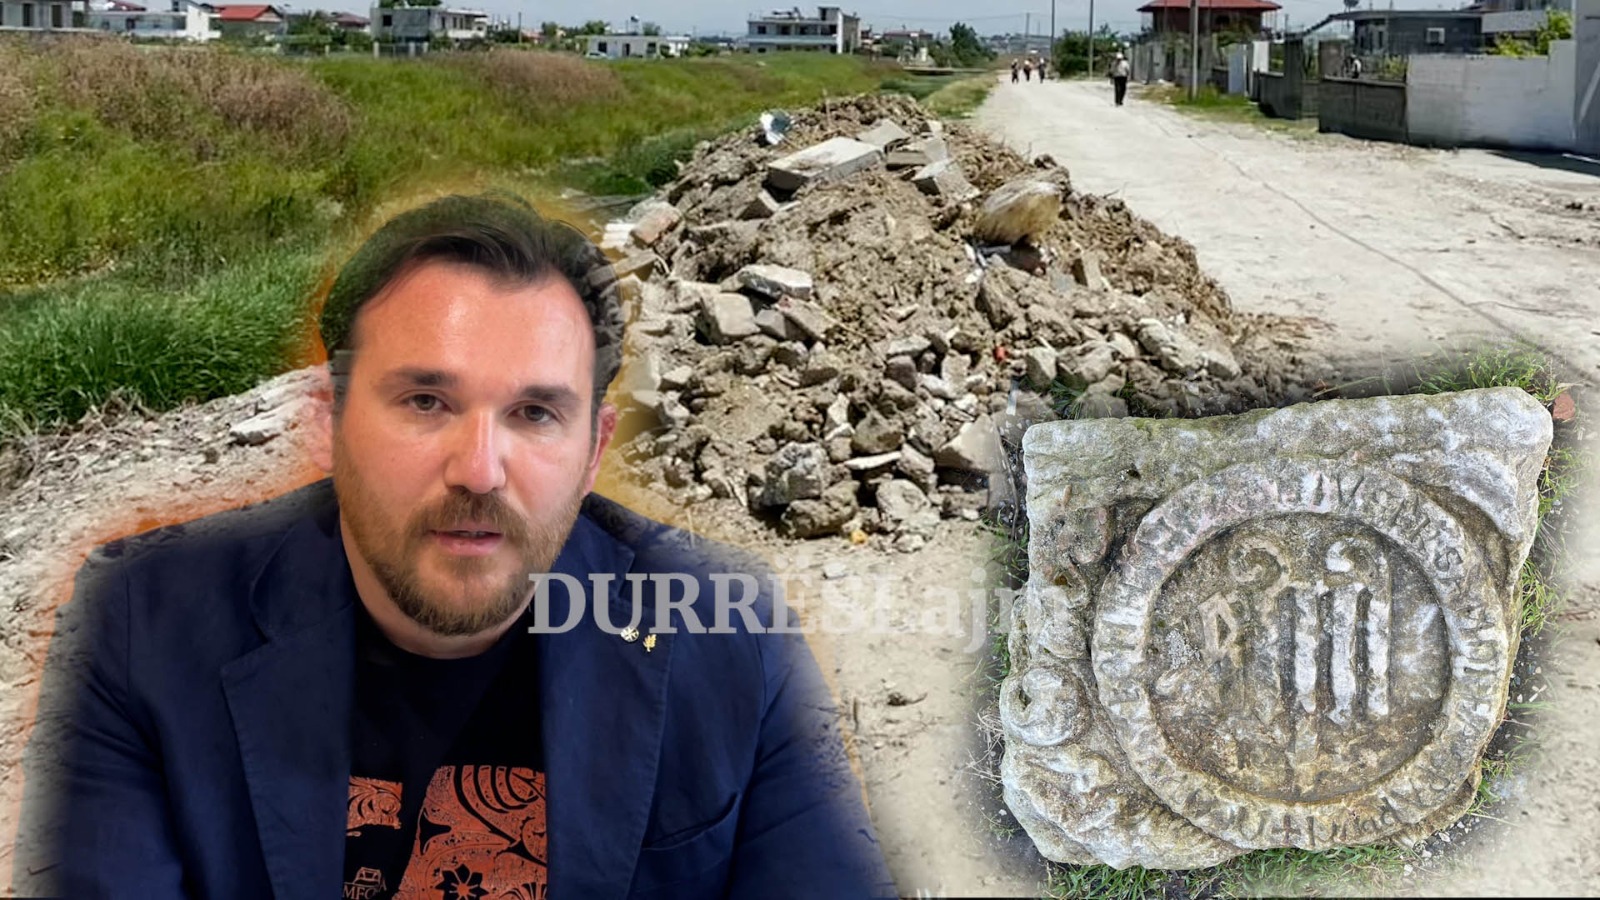 Del në dritë një tjetër objekt i rëndësishëm arkeologjik në Durrës, çfarë dihet për pllakën “e mistershme”? (VIDEO)